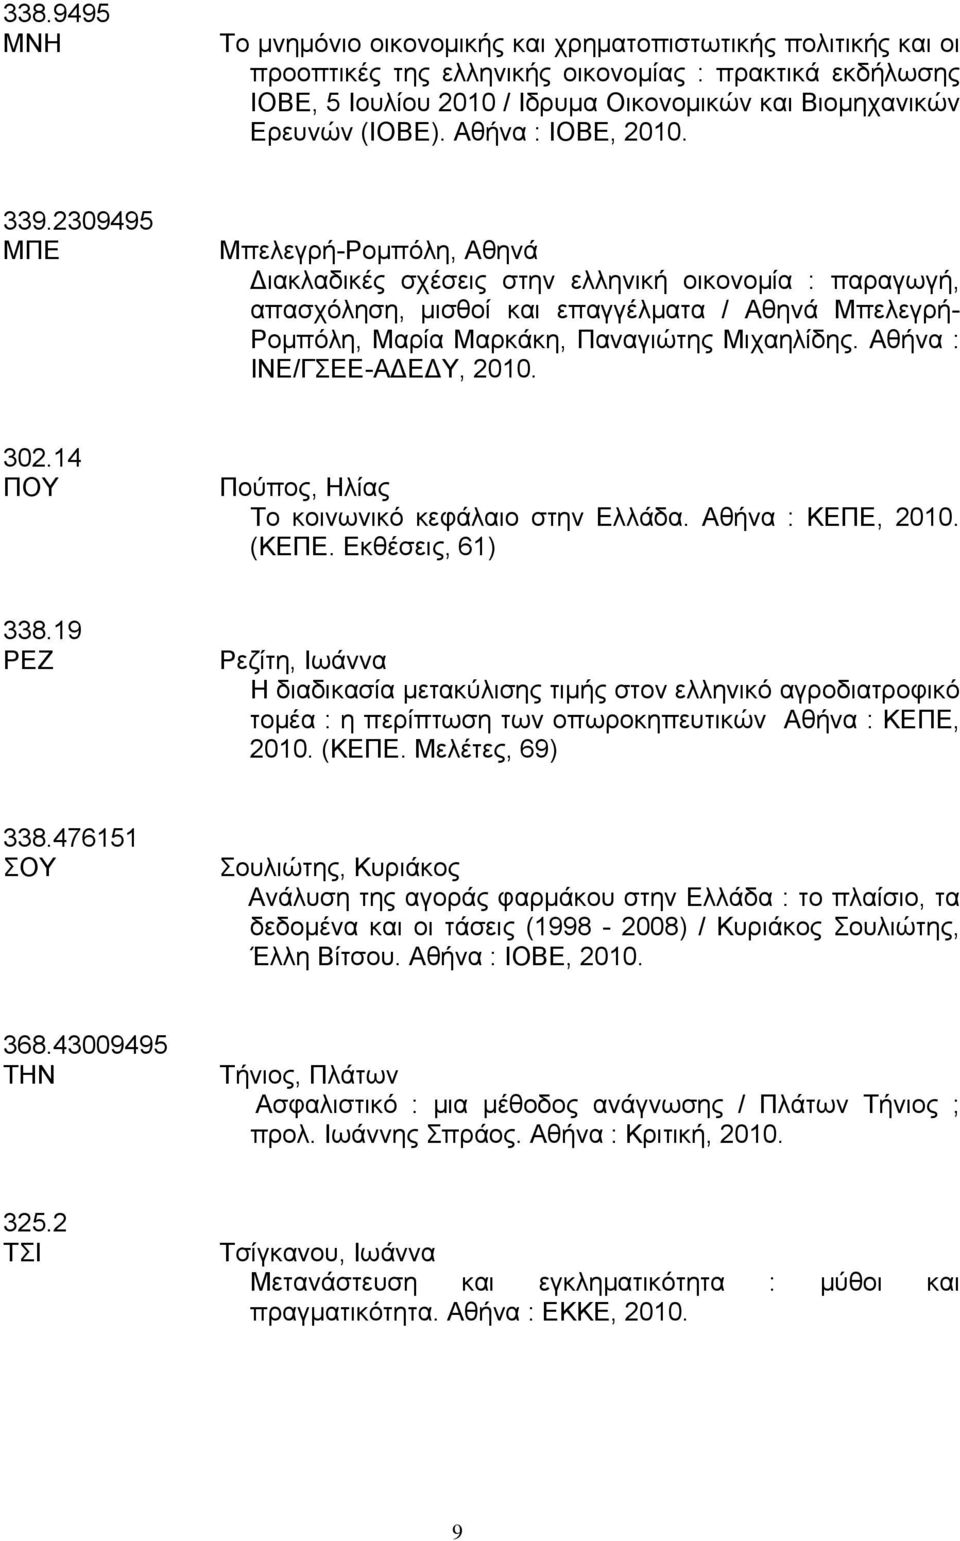 2309495 ΜΠΕ Μπελεγρή-Ρομπόλη, Αθηνά ιακλαδικές σχέσεις στην ελληνική οικονομία : παραγωγή, απασχόληση, μισθοί και επαγγέλματα / Αθηνά Μπελεγρή- Ρομπόλη, Μαρία Μαρκάκη, Παναγιώτης Μιχαηλίδης.